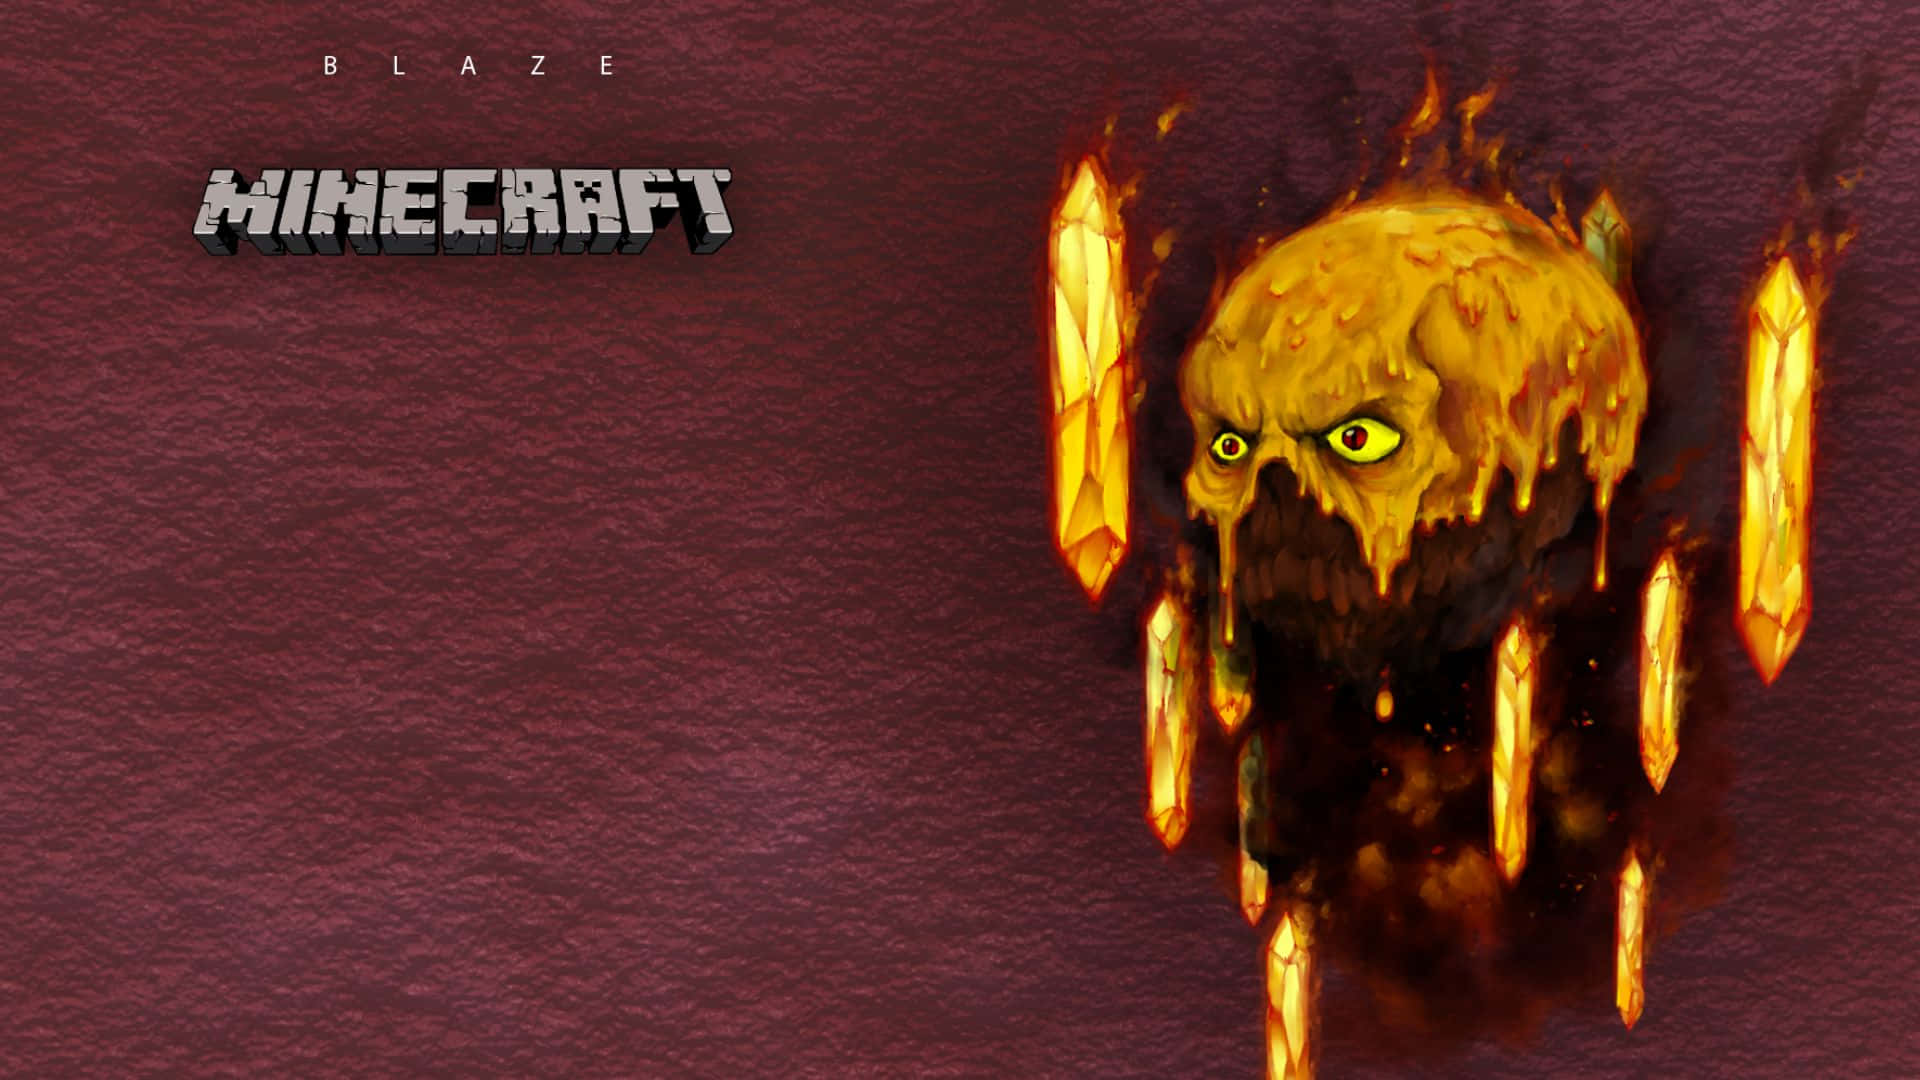 Minecraft Blaze Battling with a Player Wallpaper